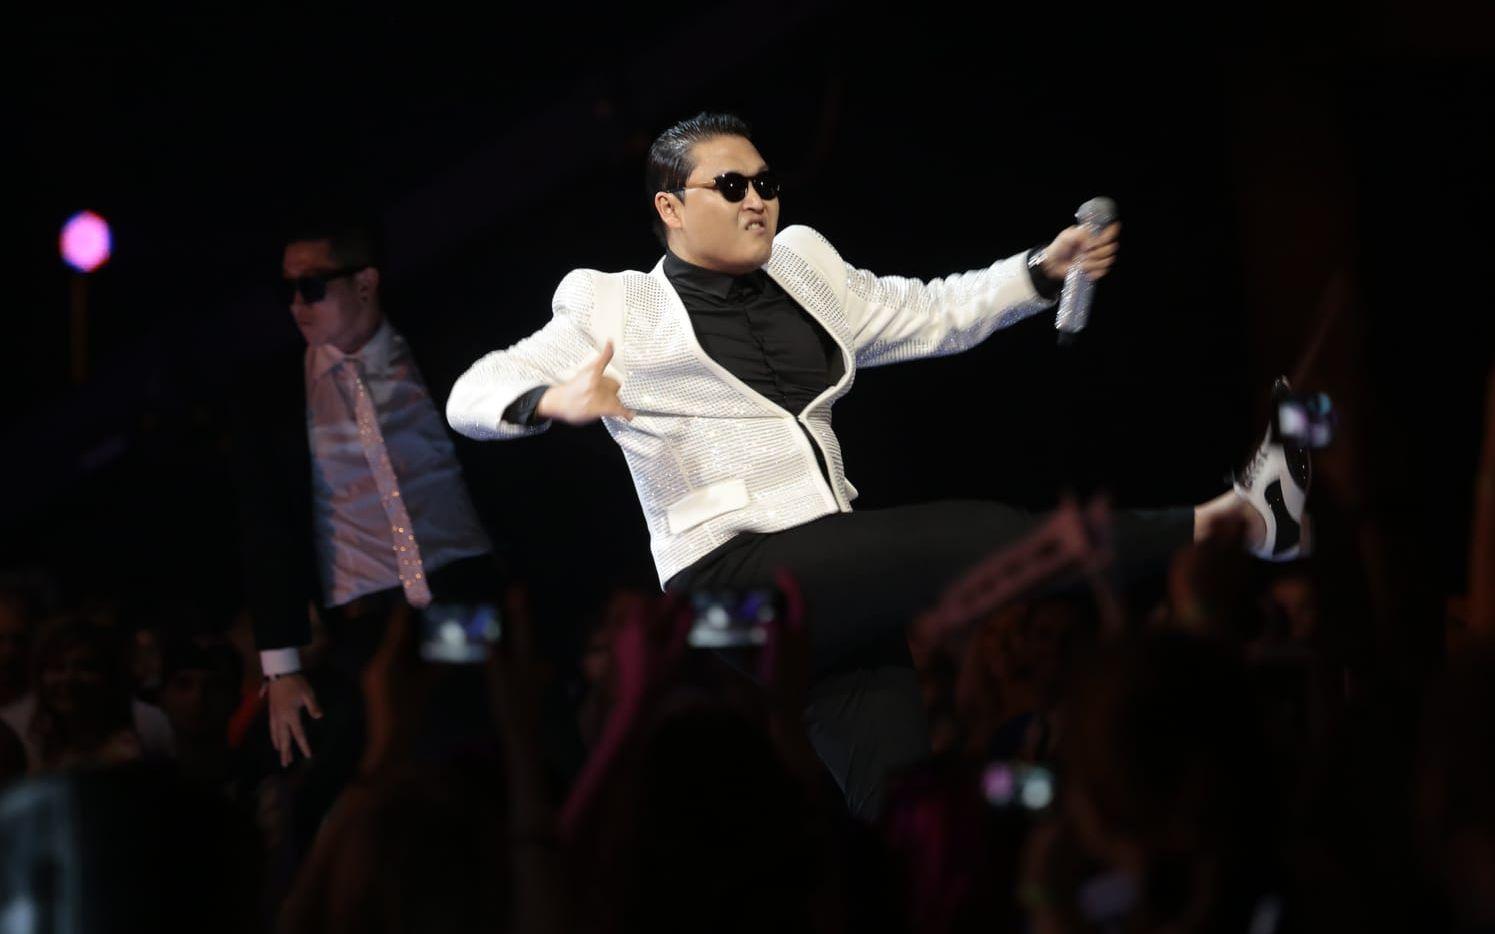 Du kunde säkert gissa det: Psys internetfenomen "Gangnam style" är den mest sedda Youtube-videon någonsin. 2,8 miljarder gånger har den setts. Foto: TT